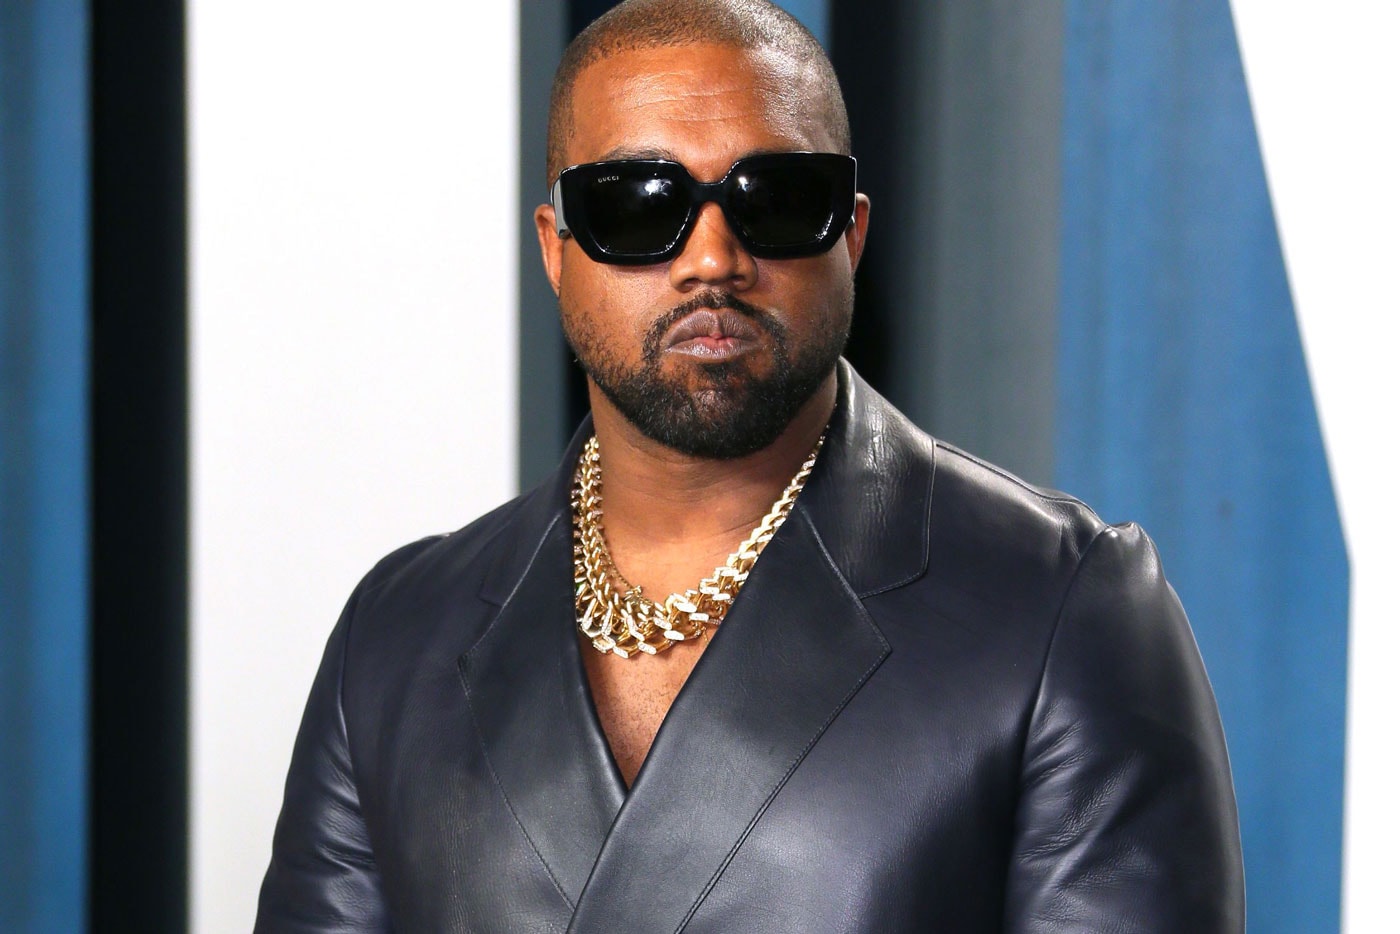 カニエ・ウェストとマクドナルドのコラボレーションが実現間近？ Kanye West Rumored To Have His Own McDonald's Meal Coming Soon donda super bowl lvi commercial chicken nuggets pete davidson los angeles rams